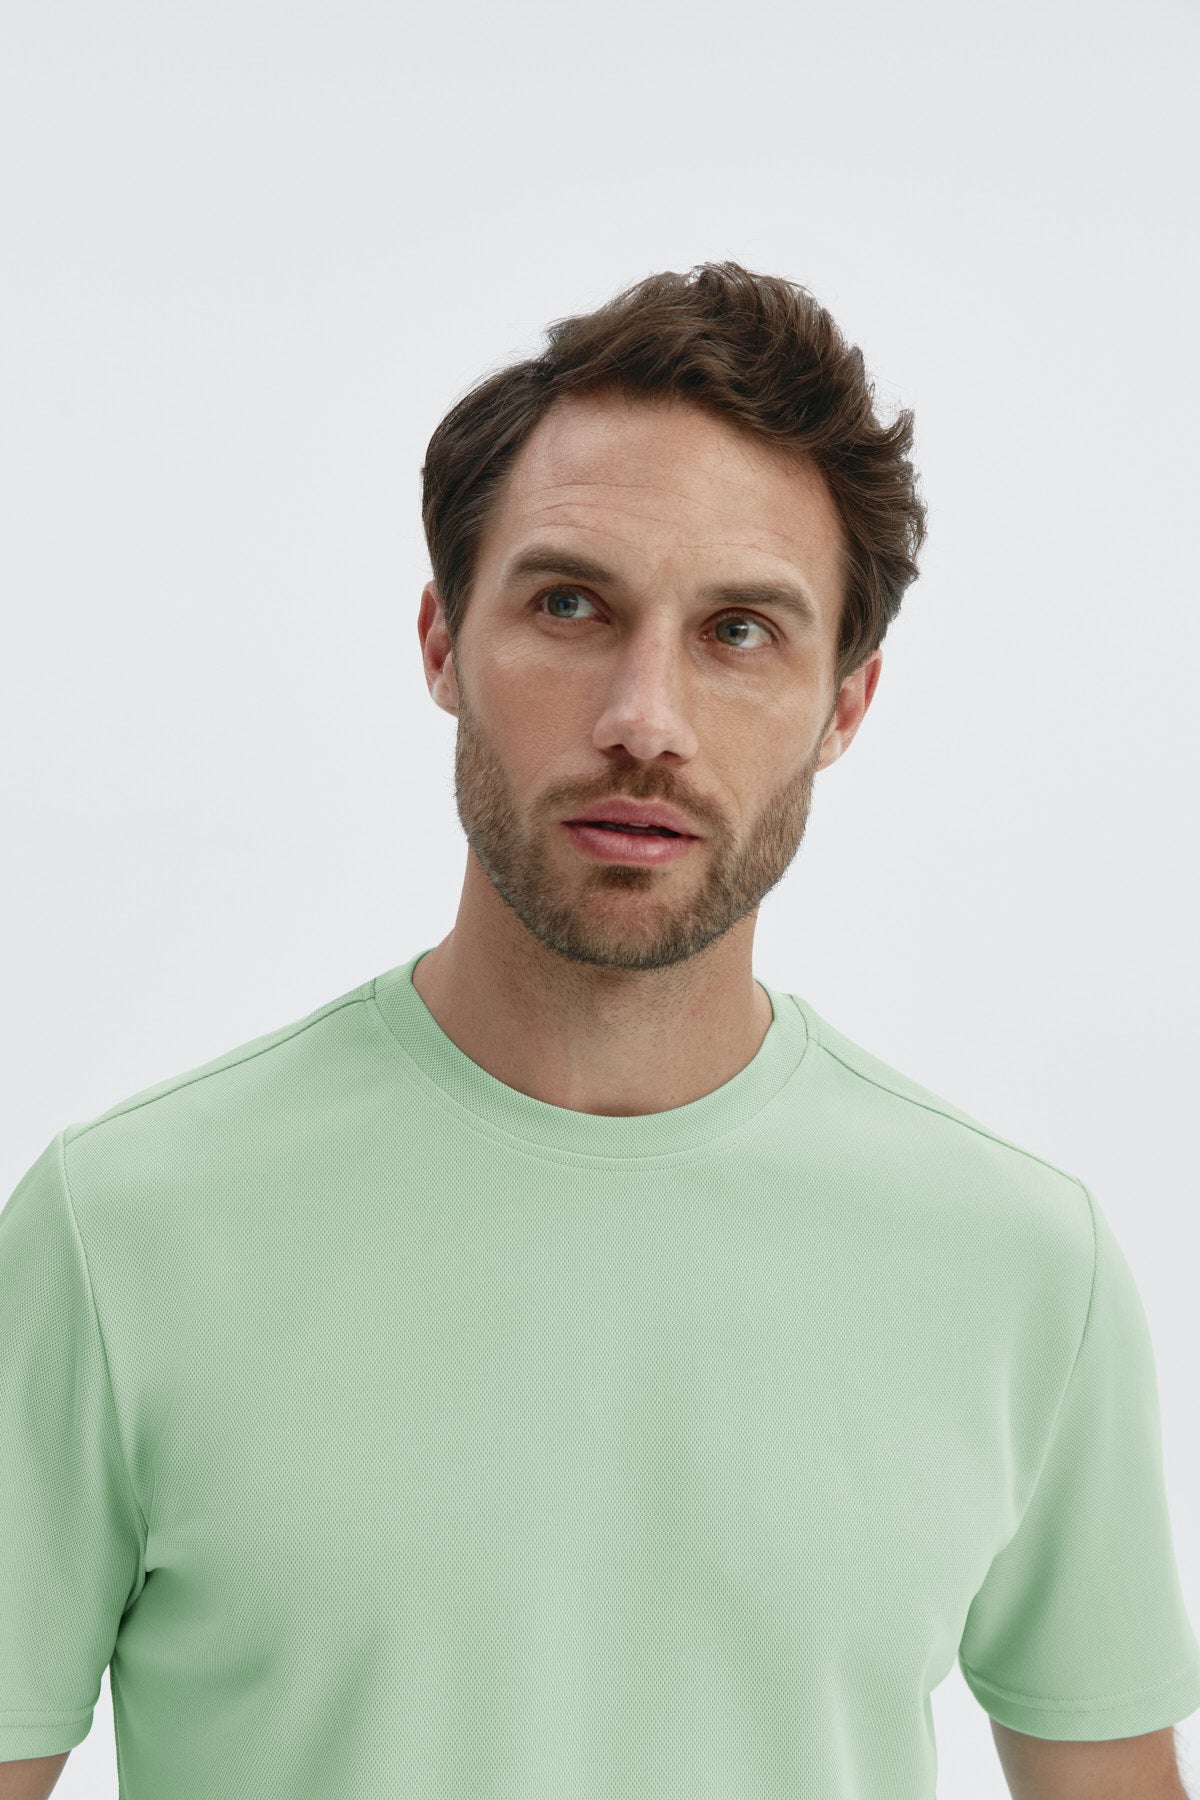 Camiseta ICE para hombre en verde freeze de Sepiia, fresca y resistente a arrugas y manchas. Foto detalle.